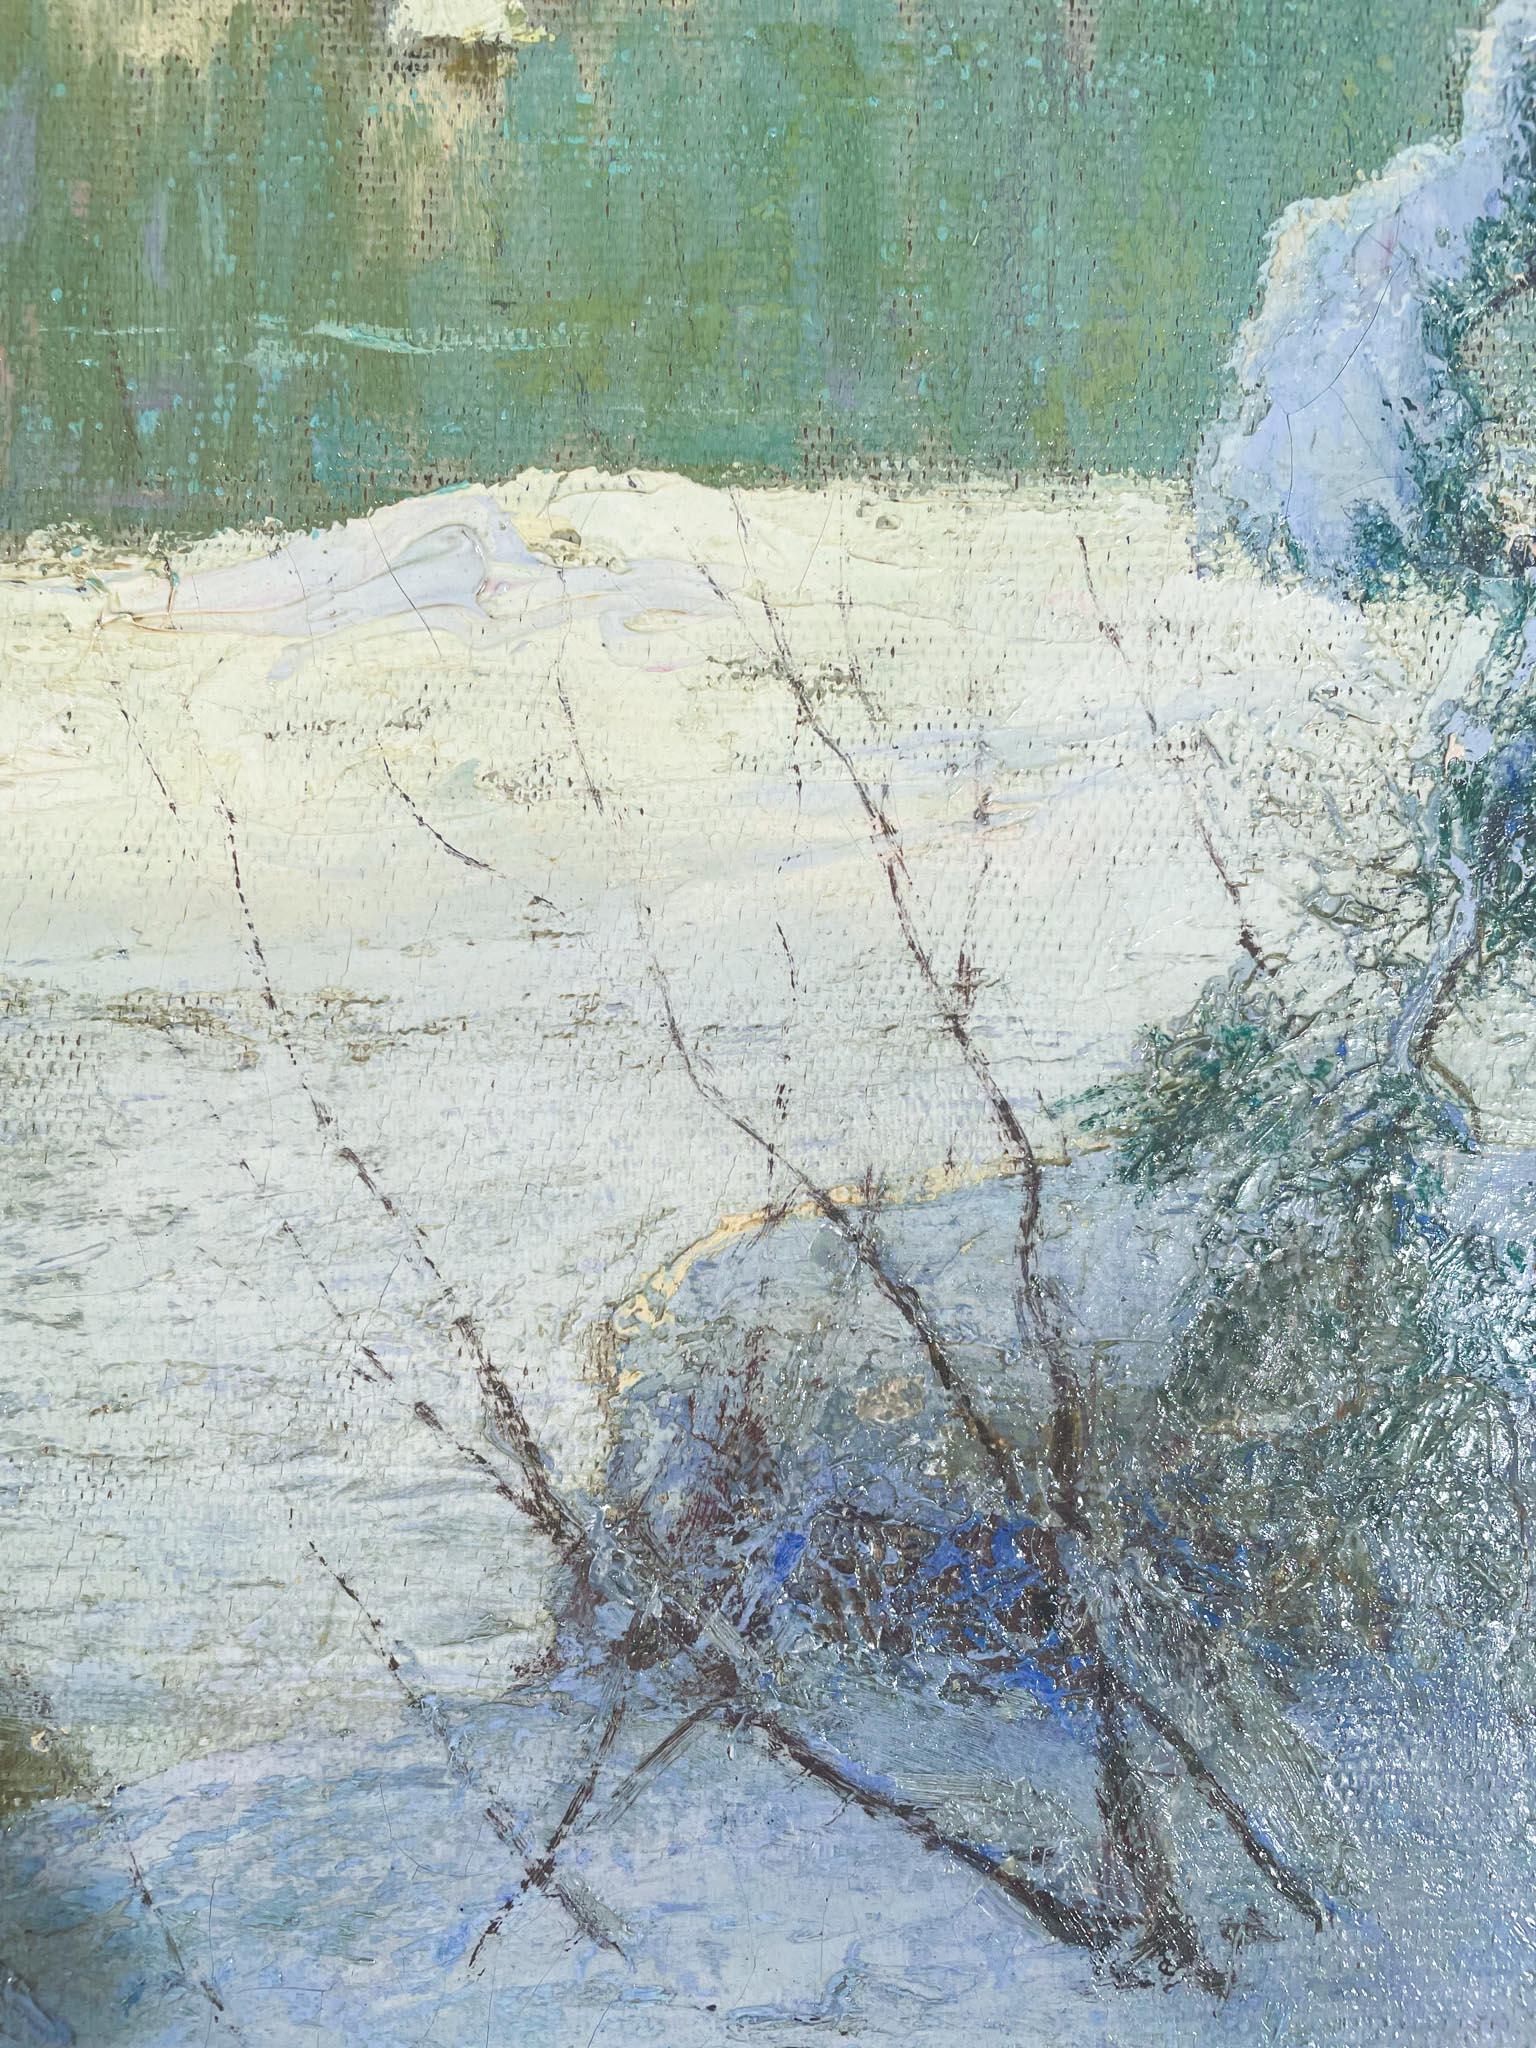 paintings of winter scenes